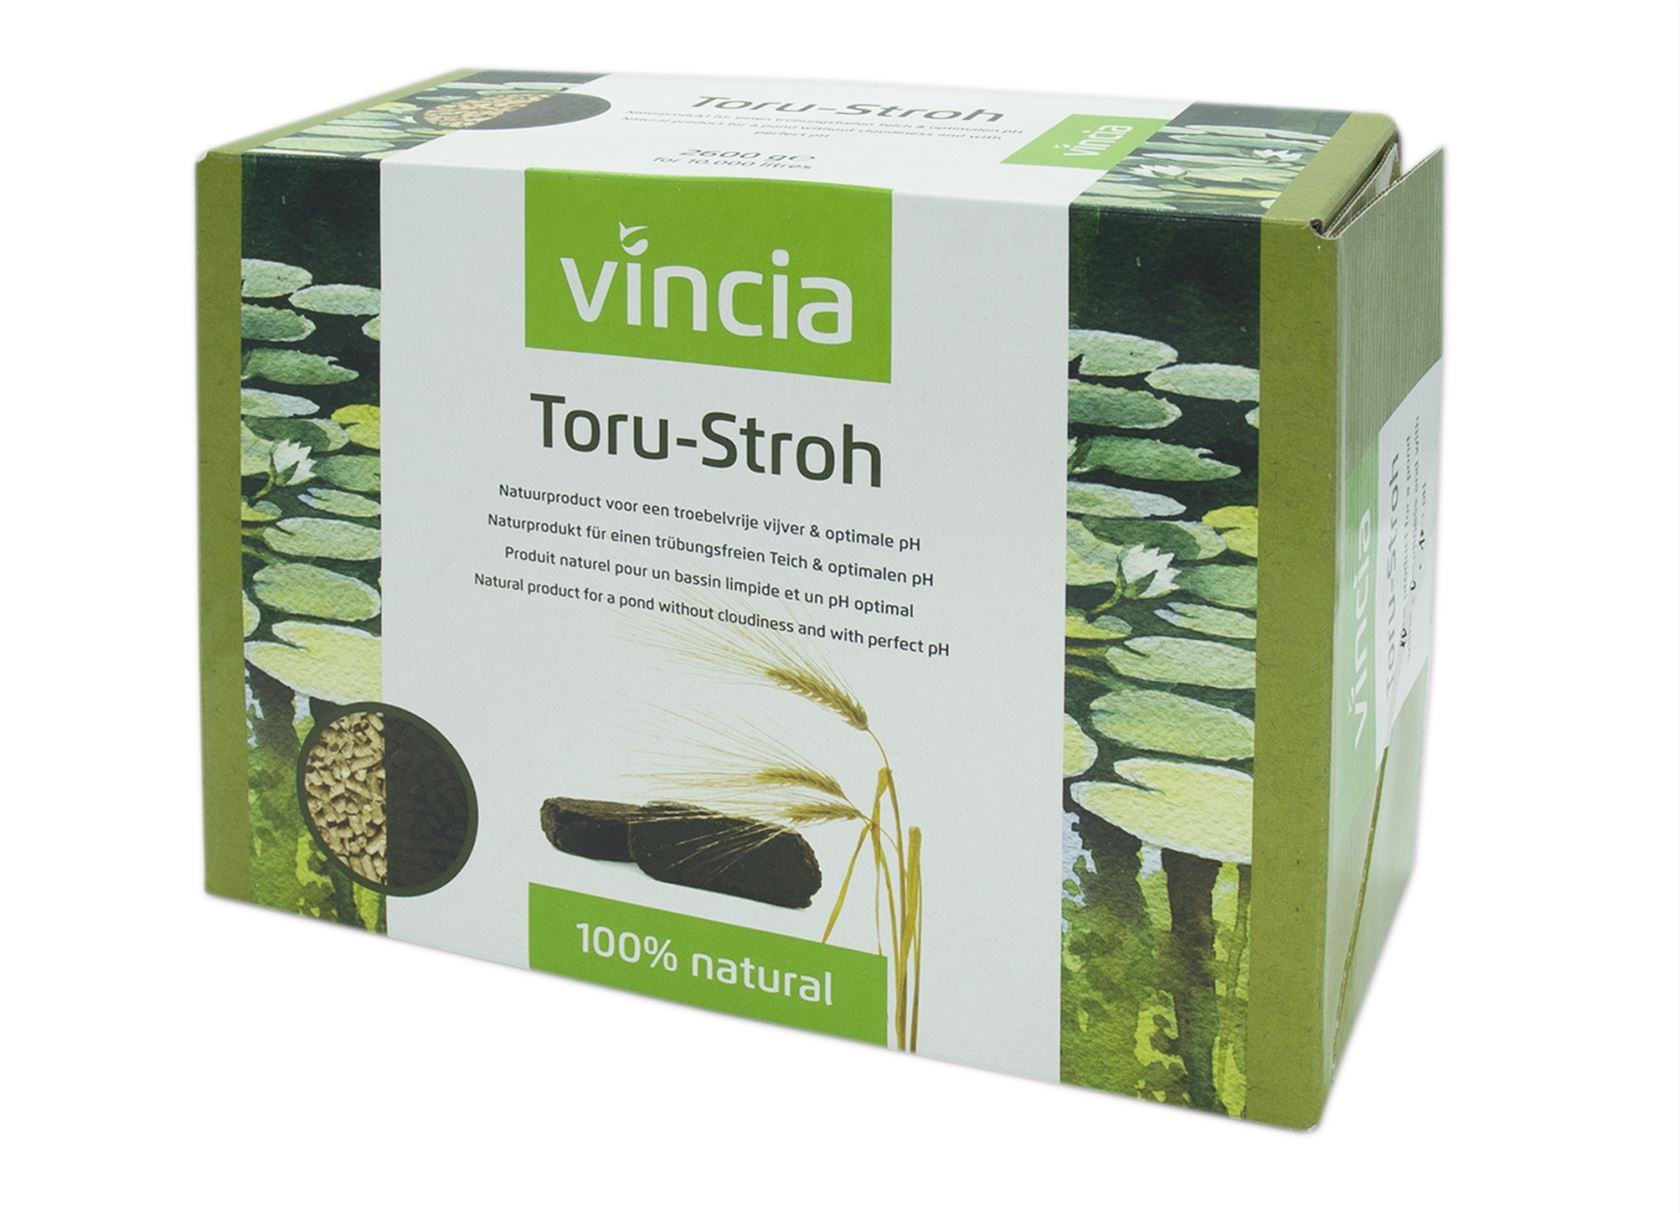 Vincia 2600 g - natuurproduct voor vijvers, gerstestro en Hermie.com - Alles voor huis & tuin online!